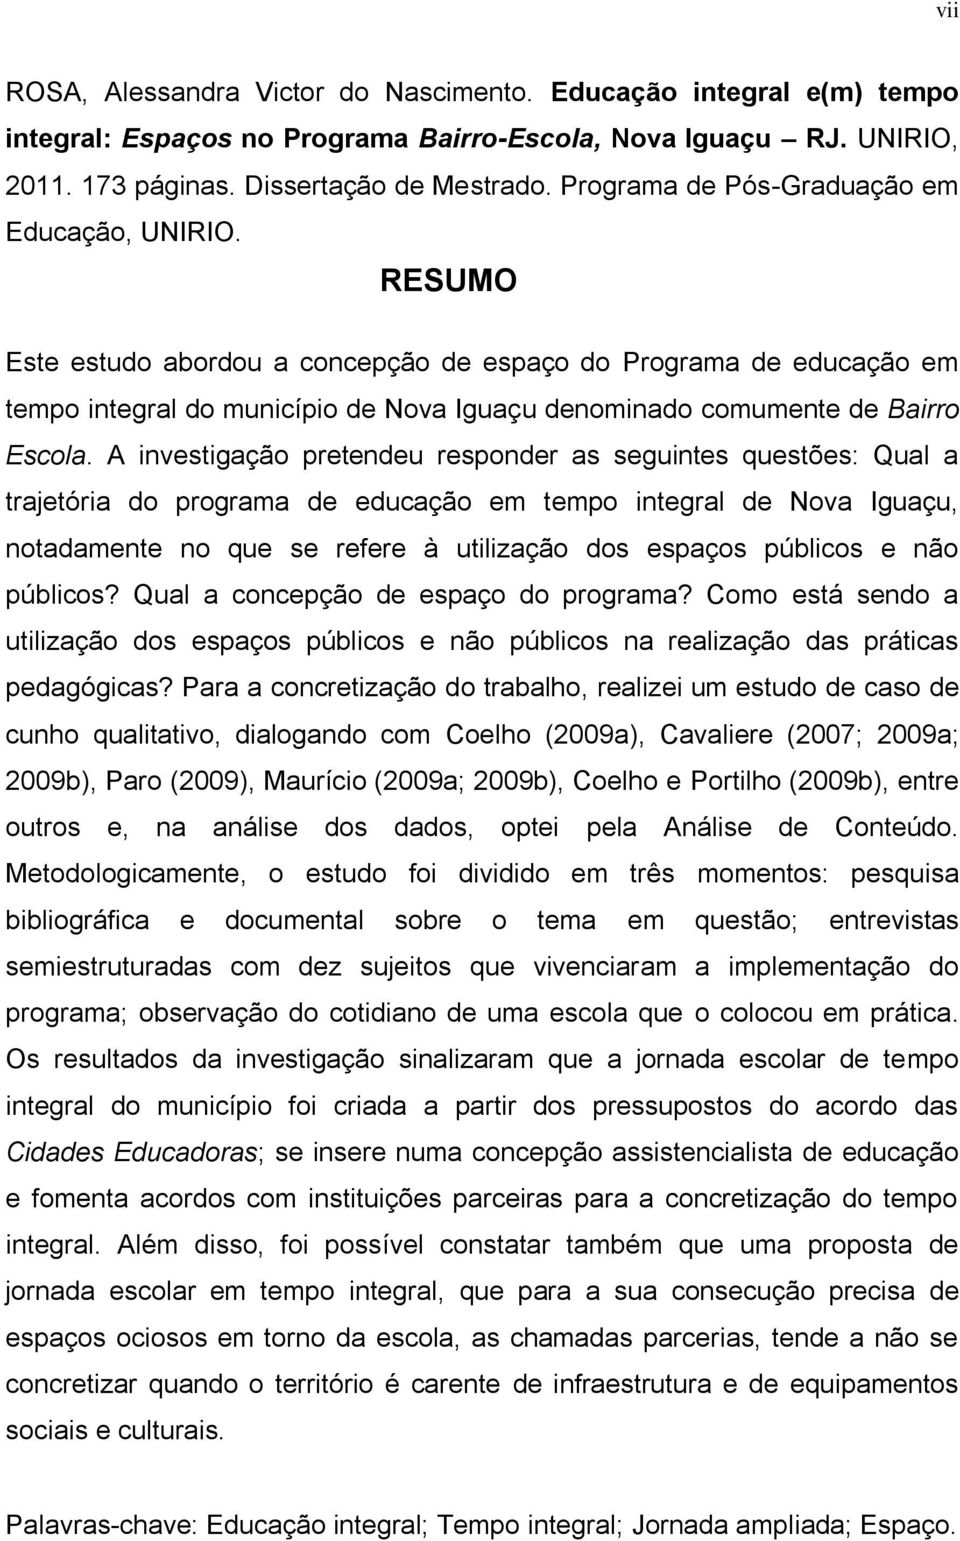 A ivestigação pretedeu respoder as seguites questões: Qual a trajetória do programa de educação em tempo itegral de Nova Iguaçu, otadamete o que se refere à utilização dos espaços públicos e ão